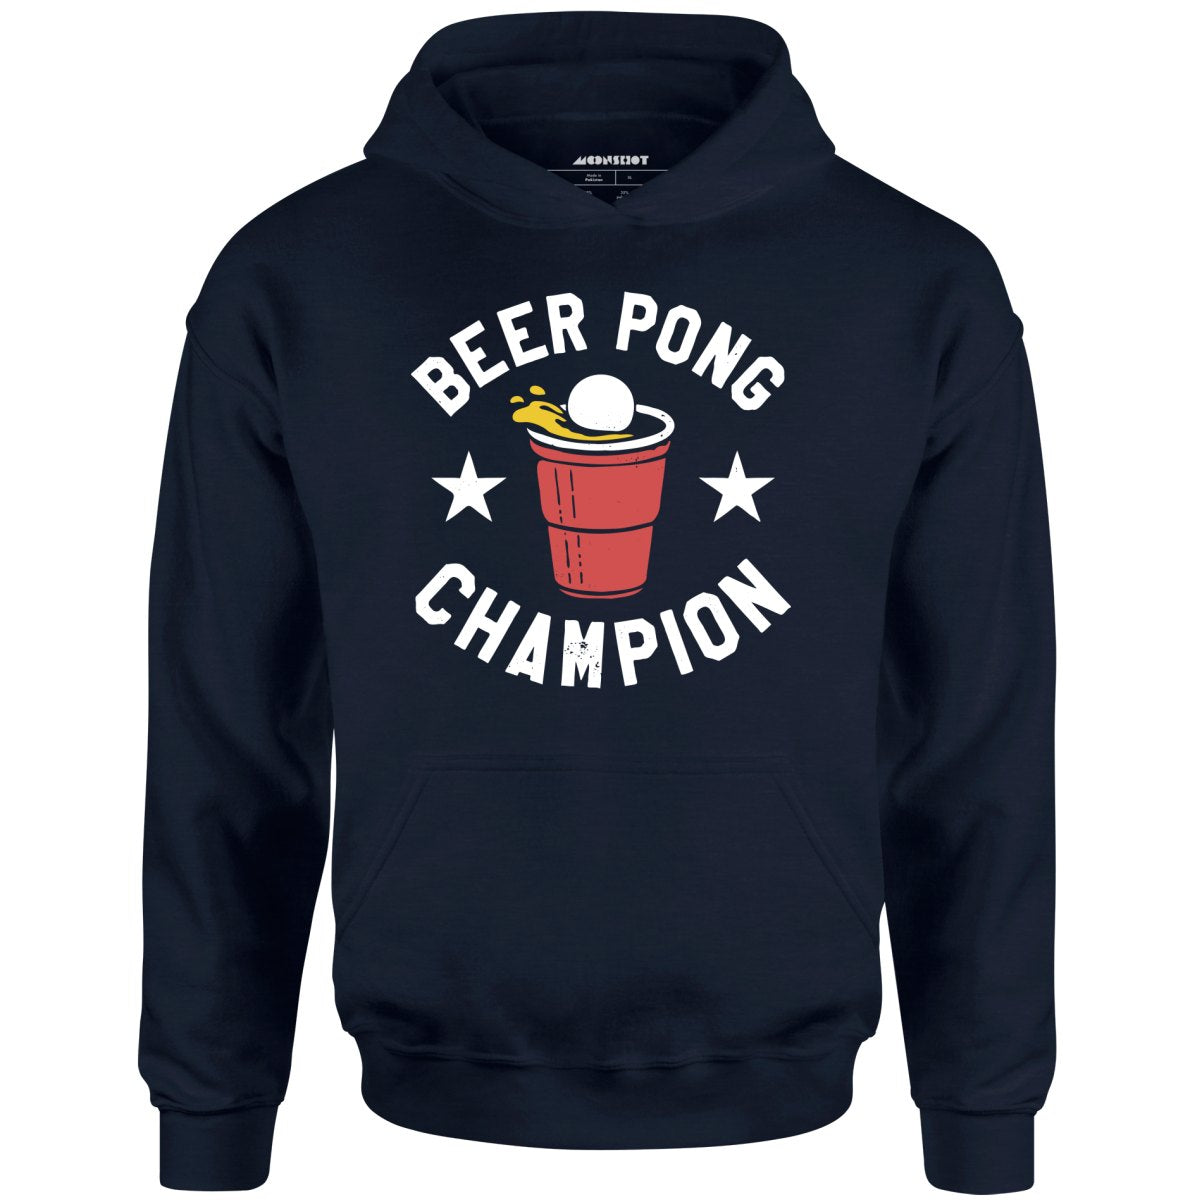 Beer Pong Champion - Unisex Hoodie